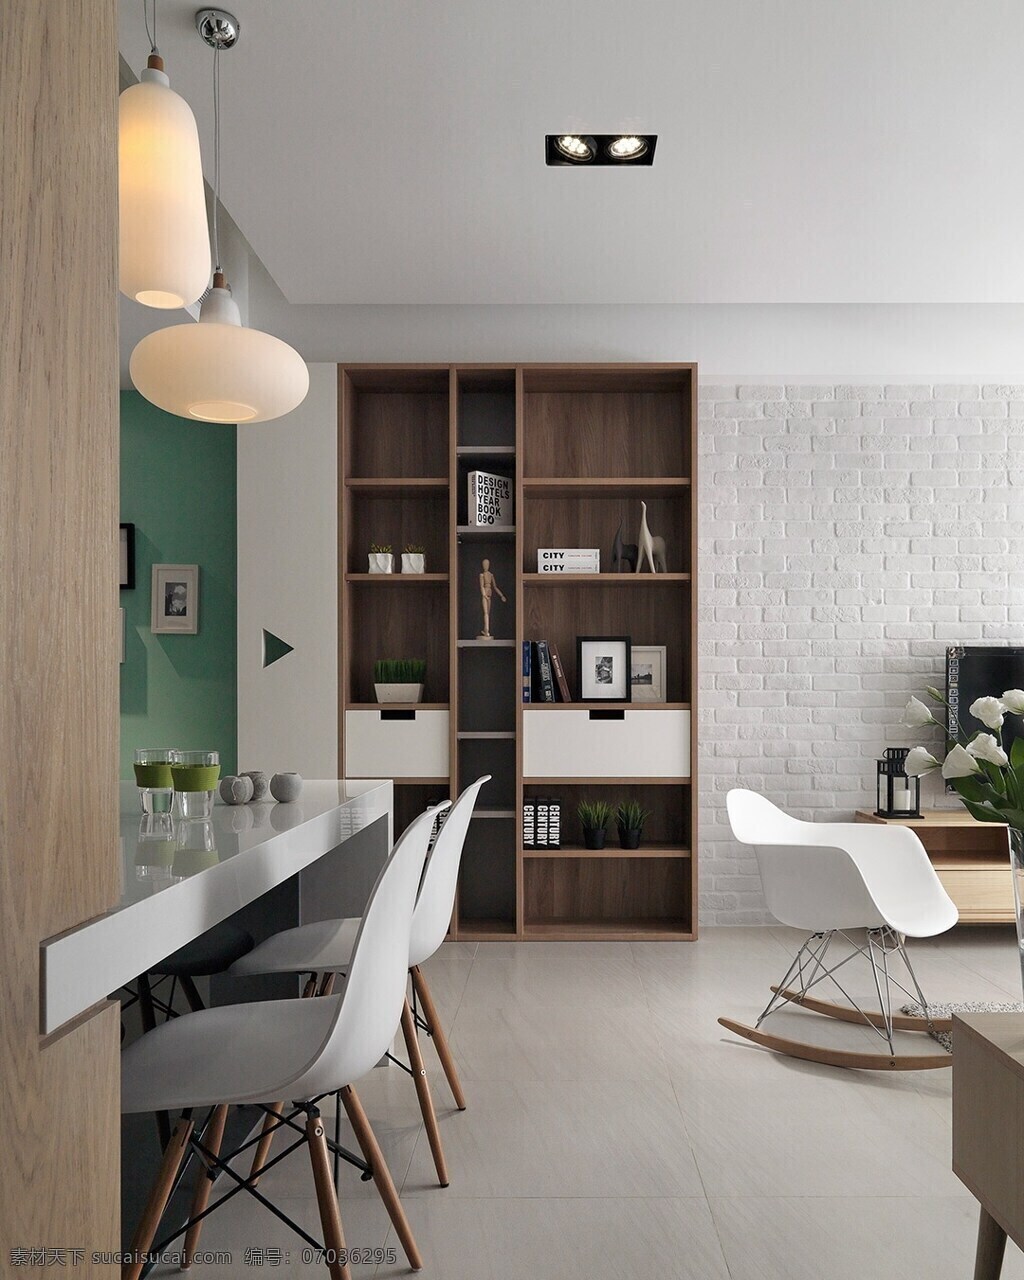 现代 客厅 浅色 地板 室内装修 效果图 白色背景墙 白色椅子 白色桌子 客厅装修